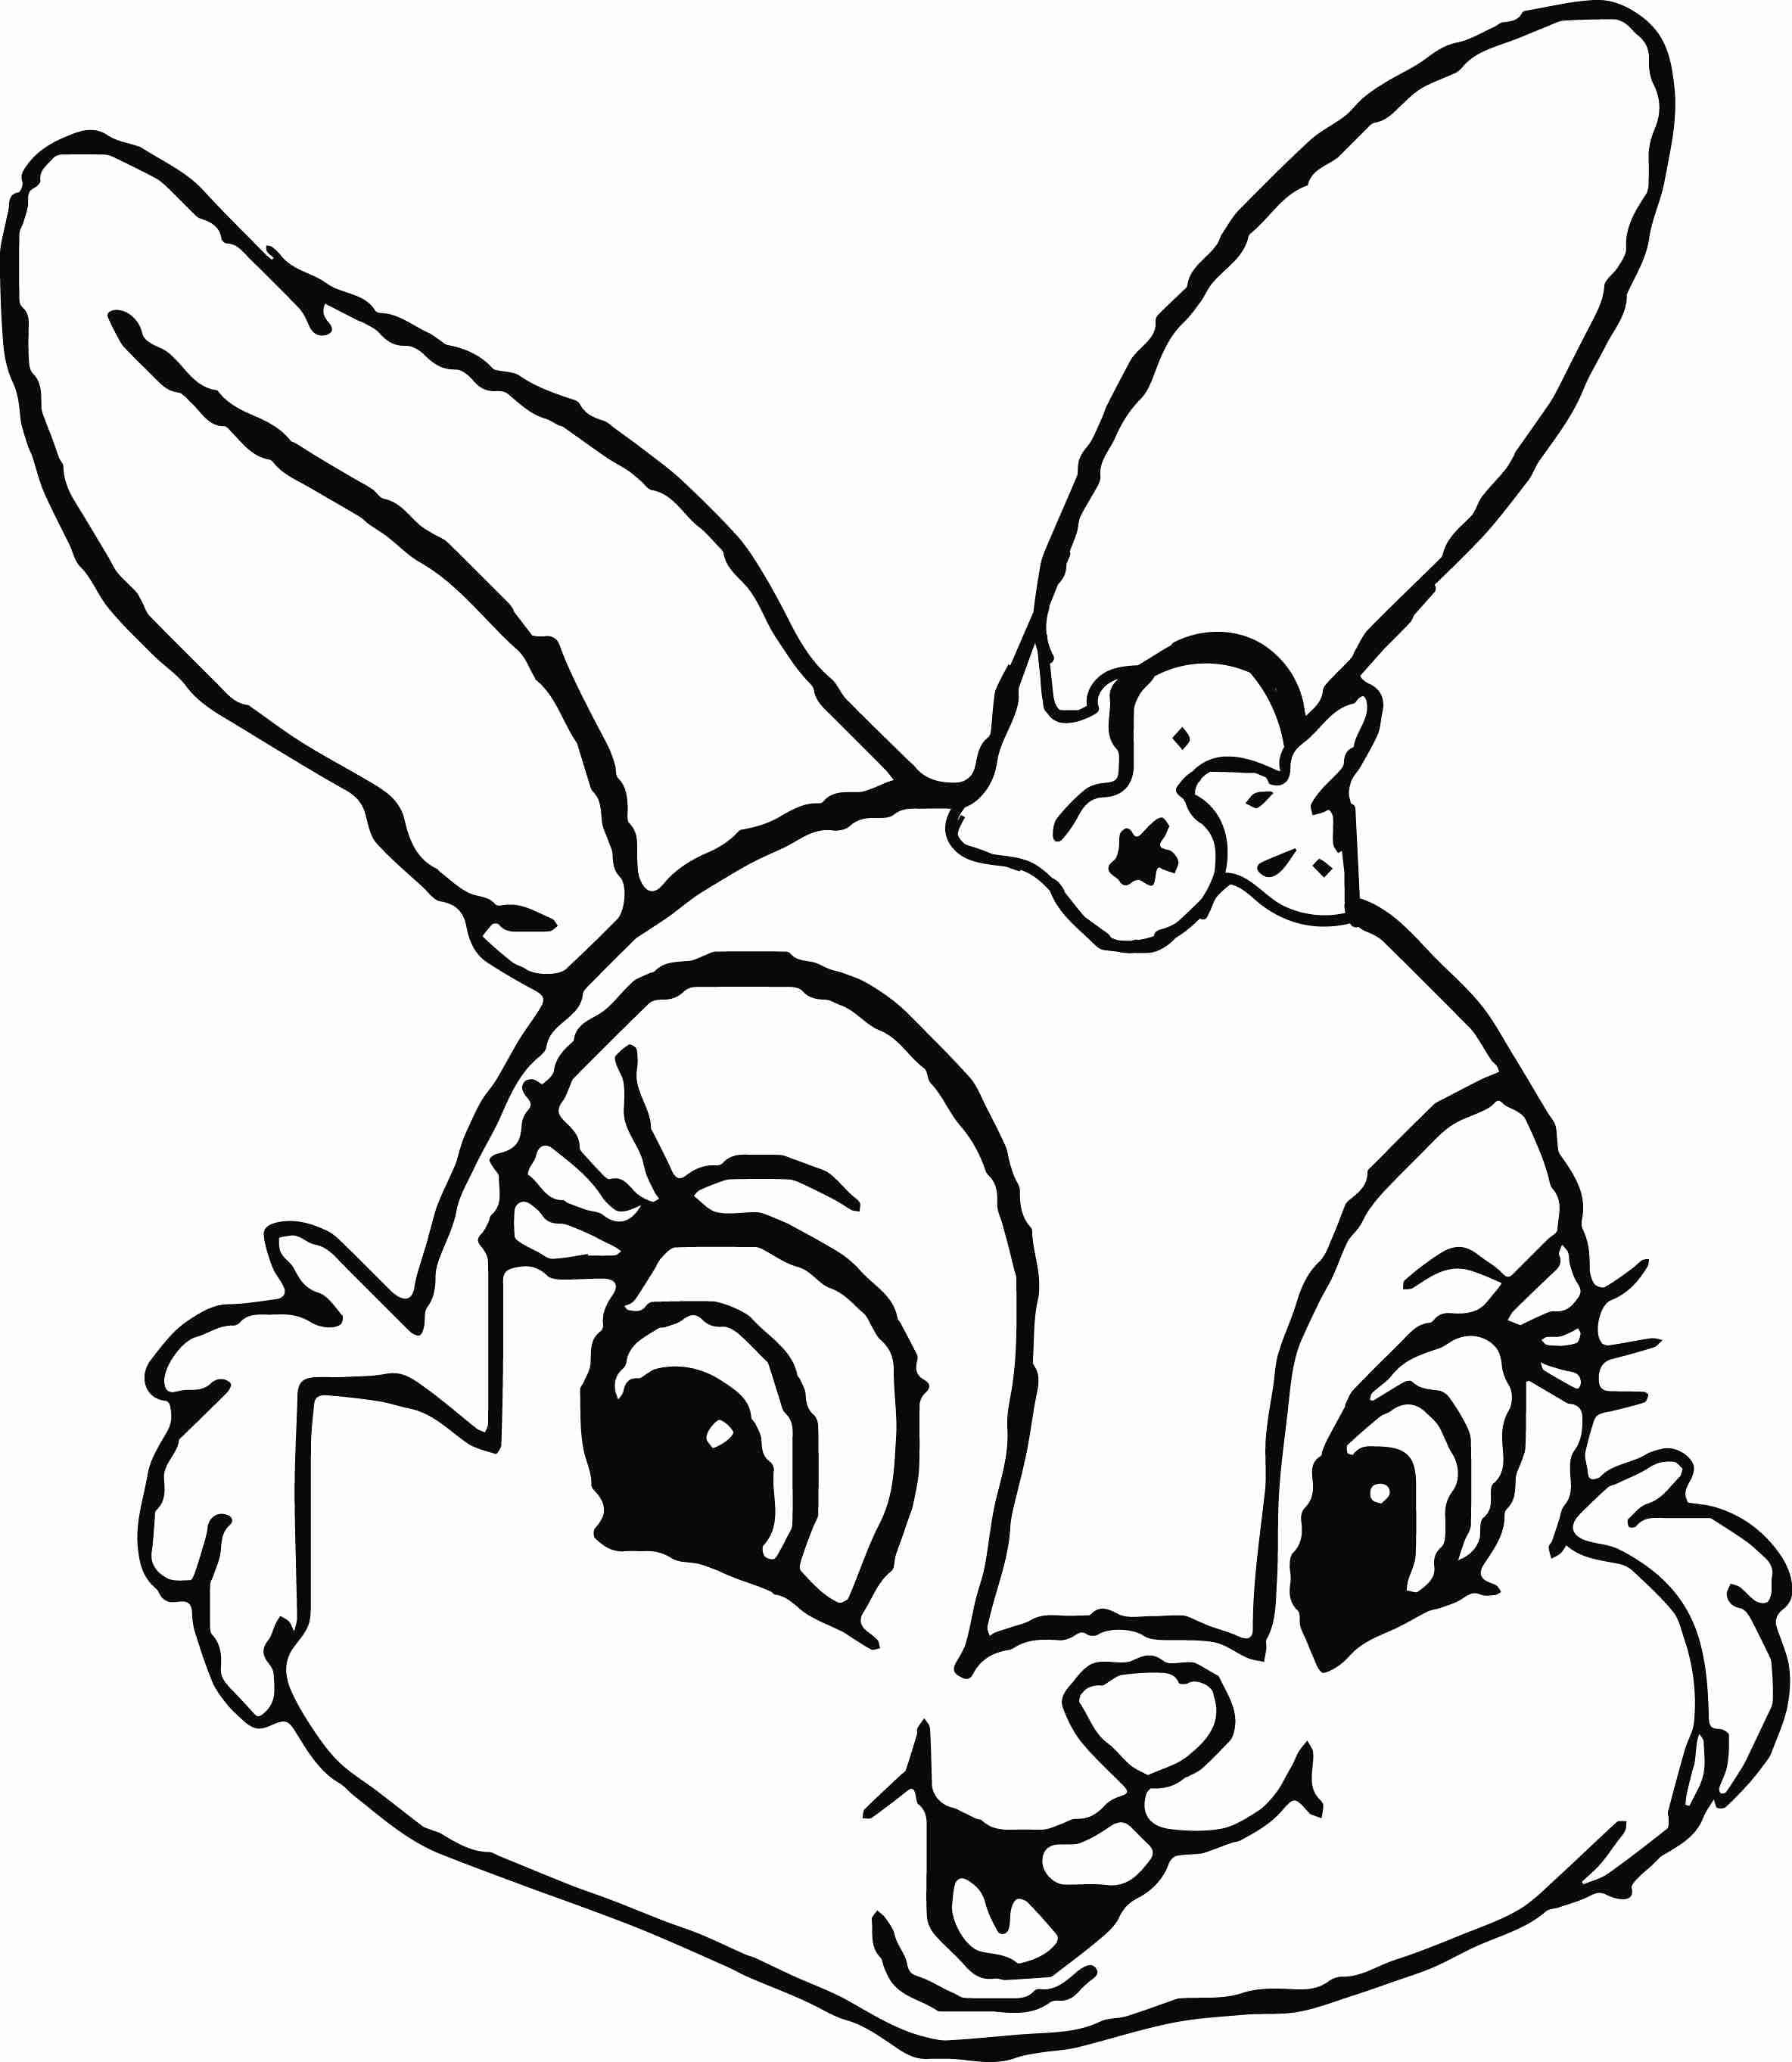 Rabbit face рисунок для детей